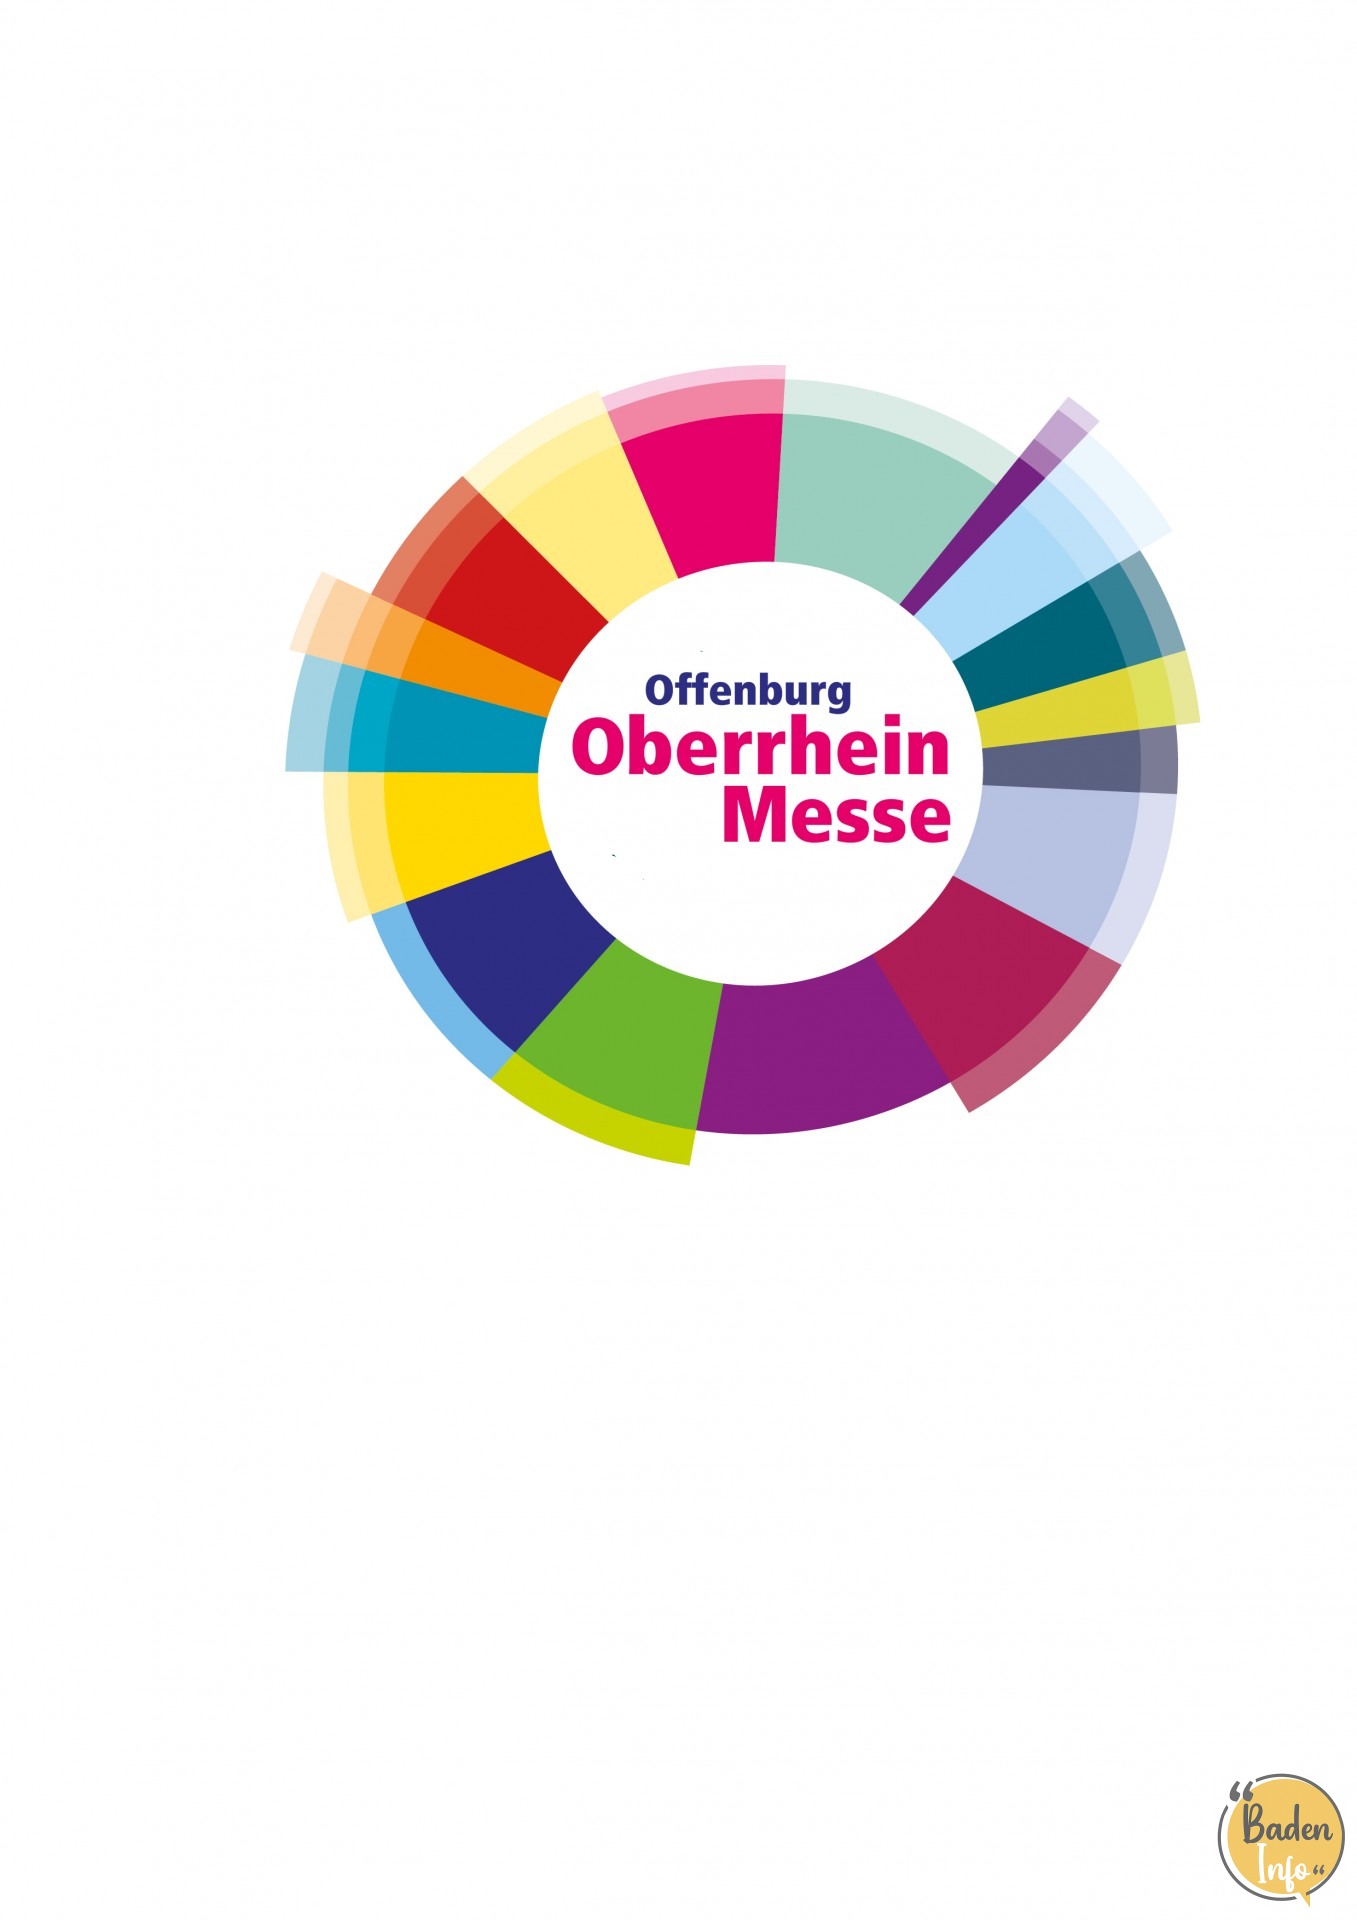 Oberrhein Messe in Offenburg